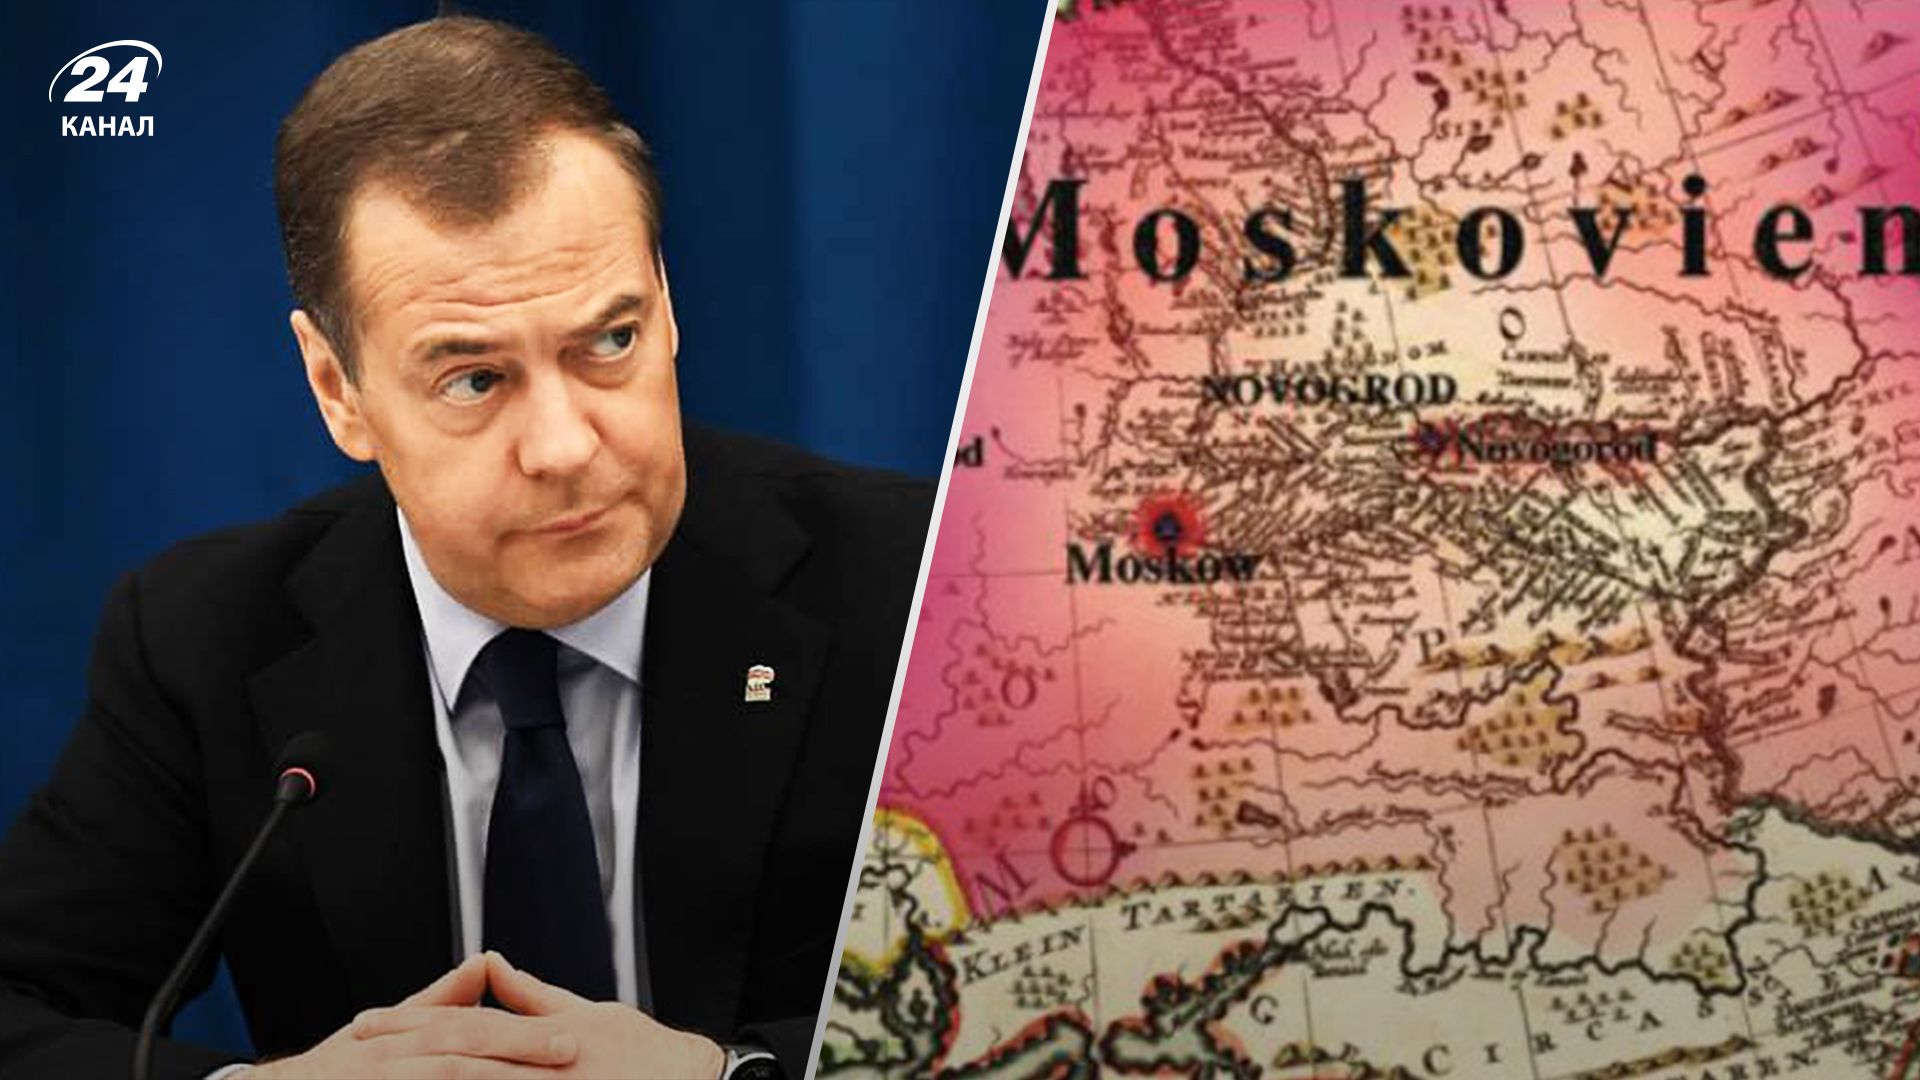 В России боятся: Медведев взорвался образами, предлагая "свой вариант названия Украины" - 24 Канал